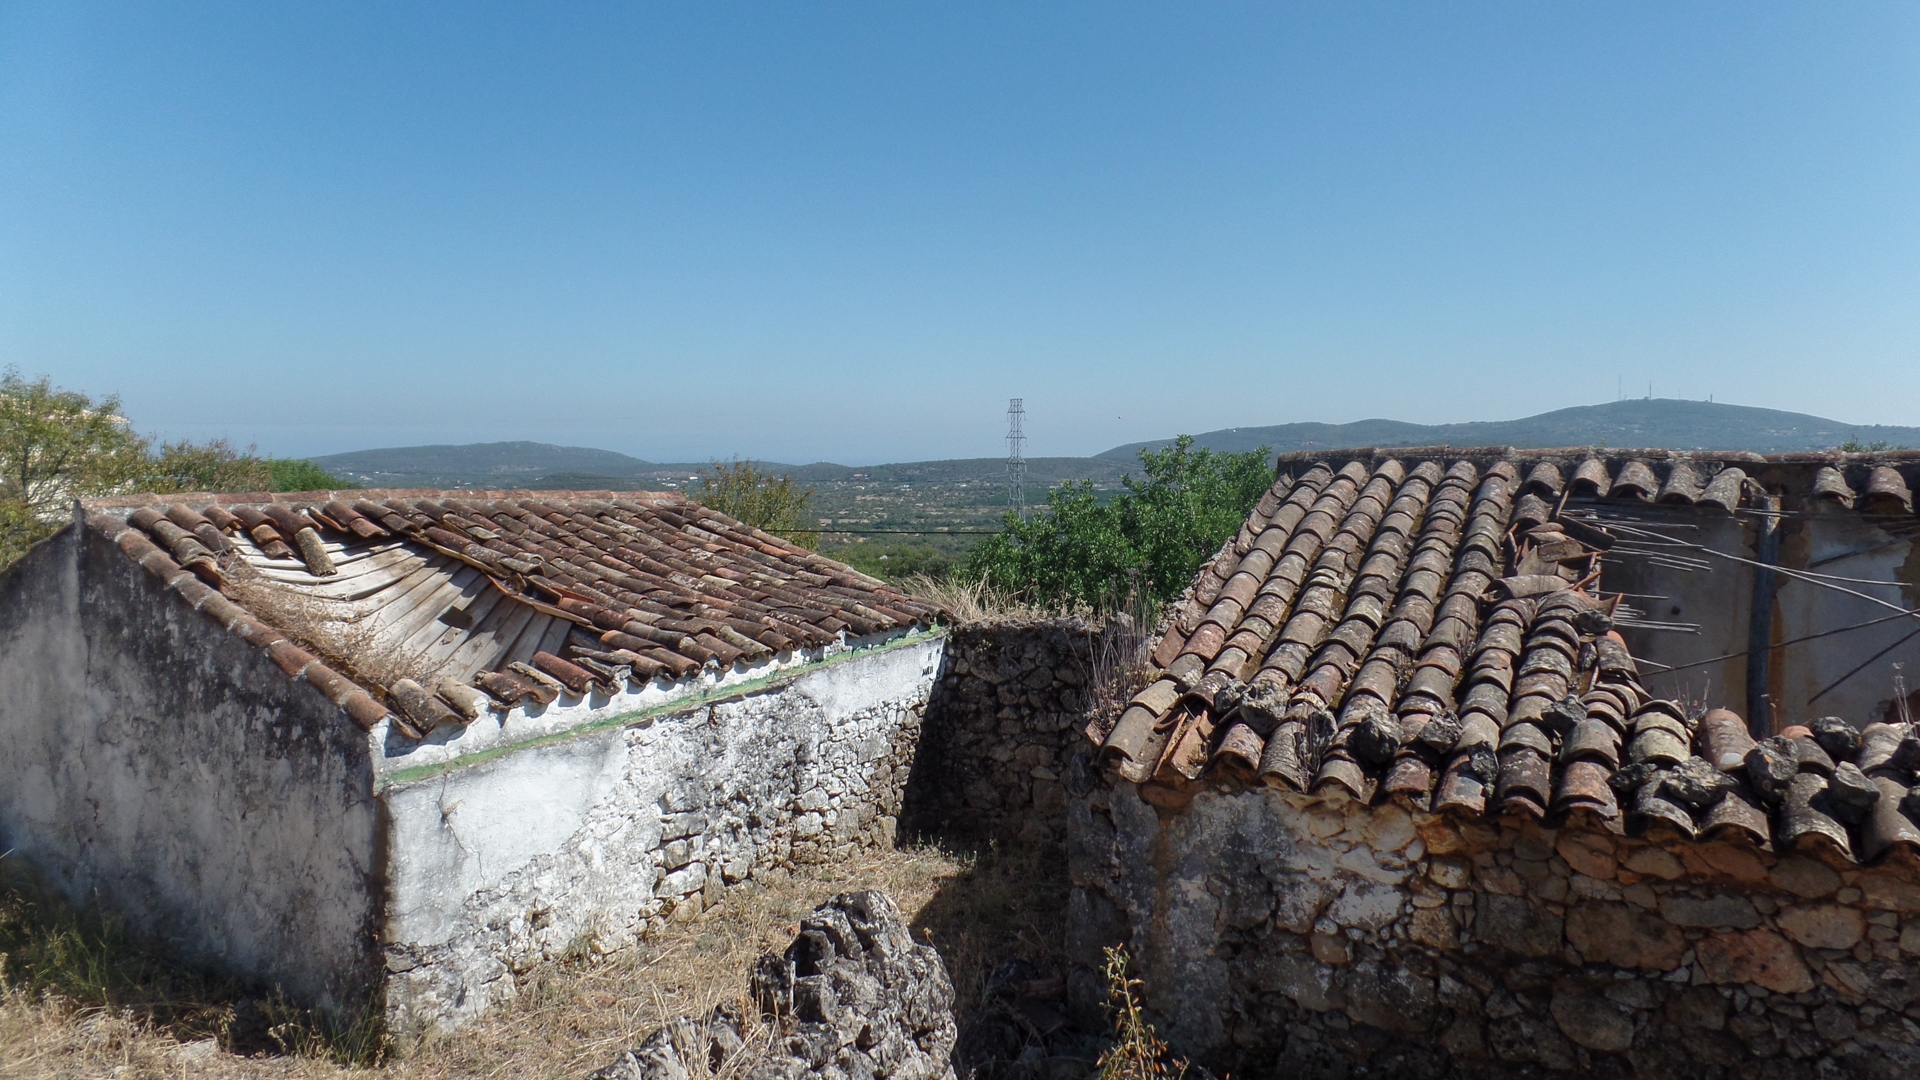 Ruines orientées au sud avec vue sur la montagne et vue partielle sur la mer près de São Brás | VM1174 Cadre de campagne mais pas isolé. Un grand potentiel pour concevoir et construire une maison à un étage pour les acheteurs. Possibilité d'acheter un terrain de 3000m2. Près de São Brás.